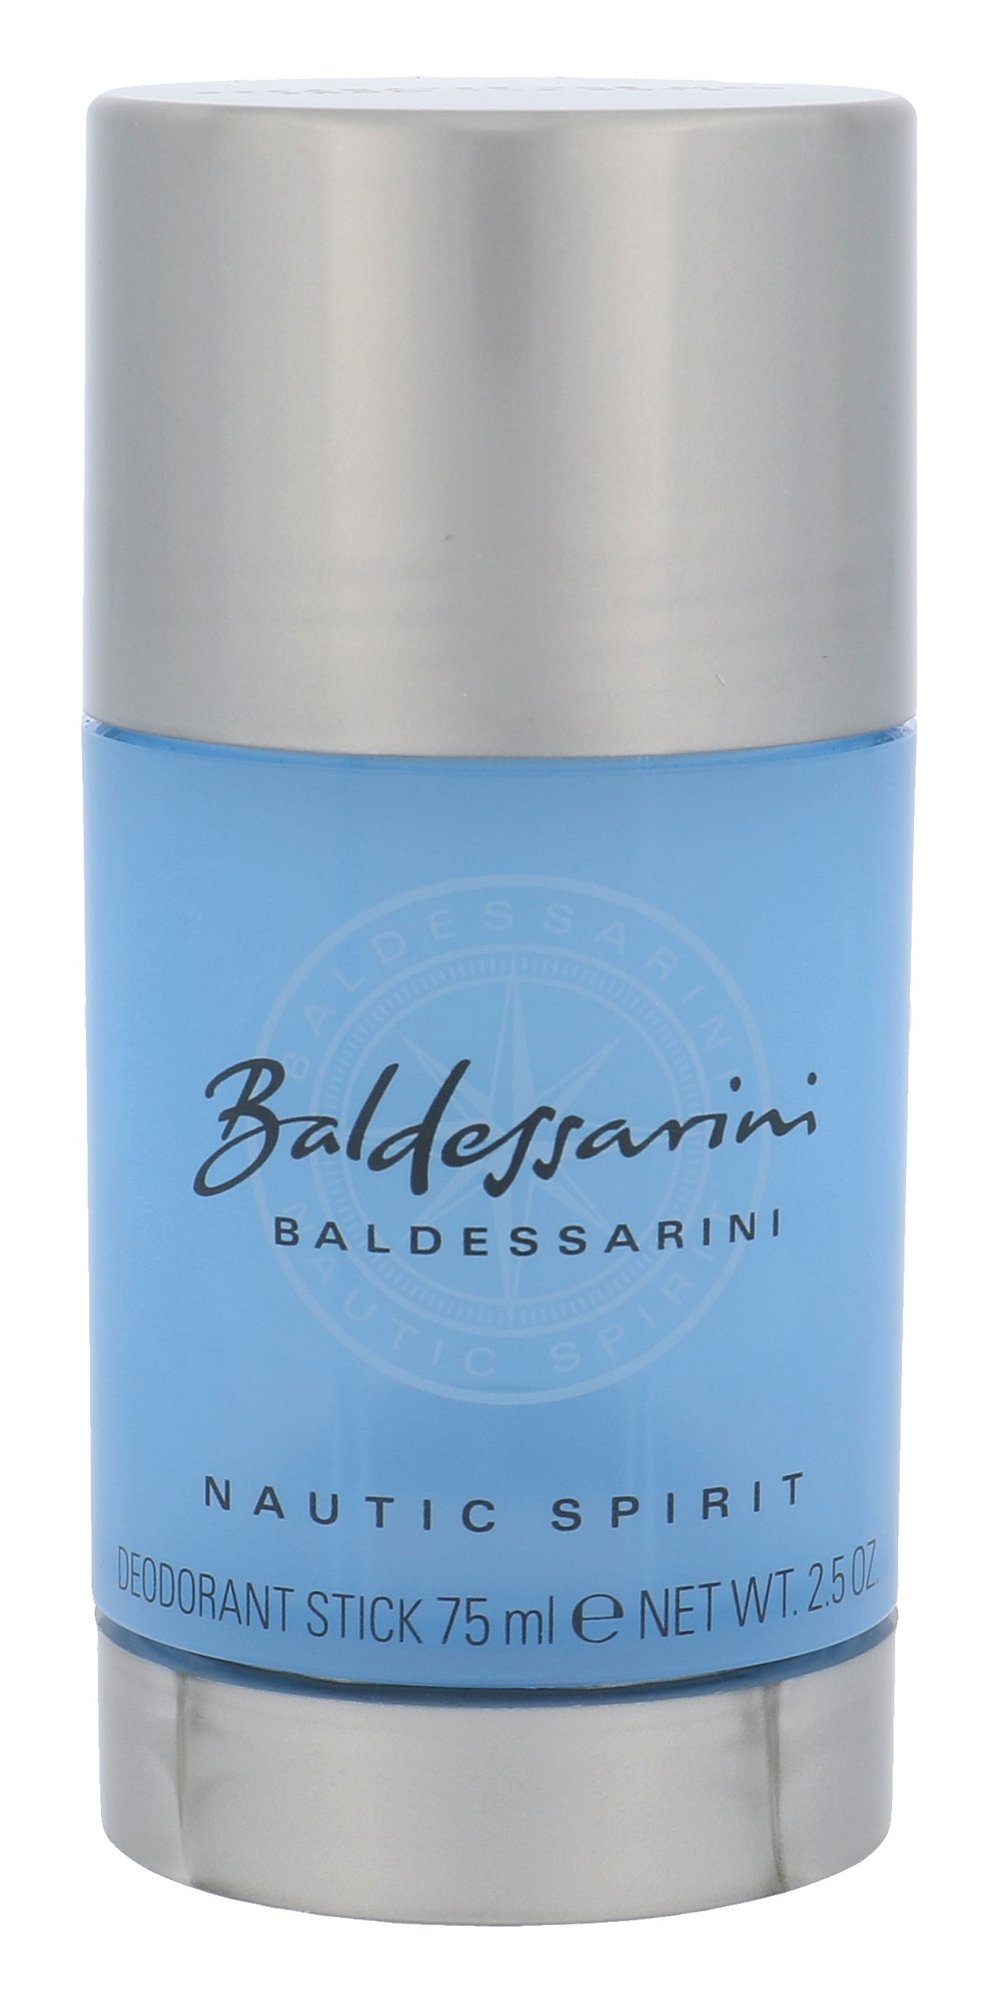 Baldessarini Nautic Spirit 75ml dezodorantas